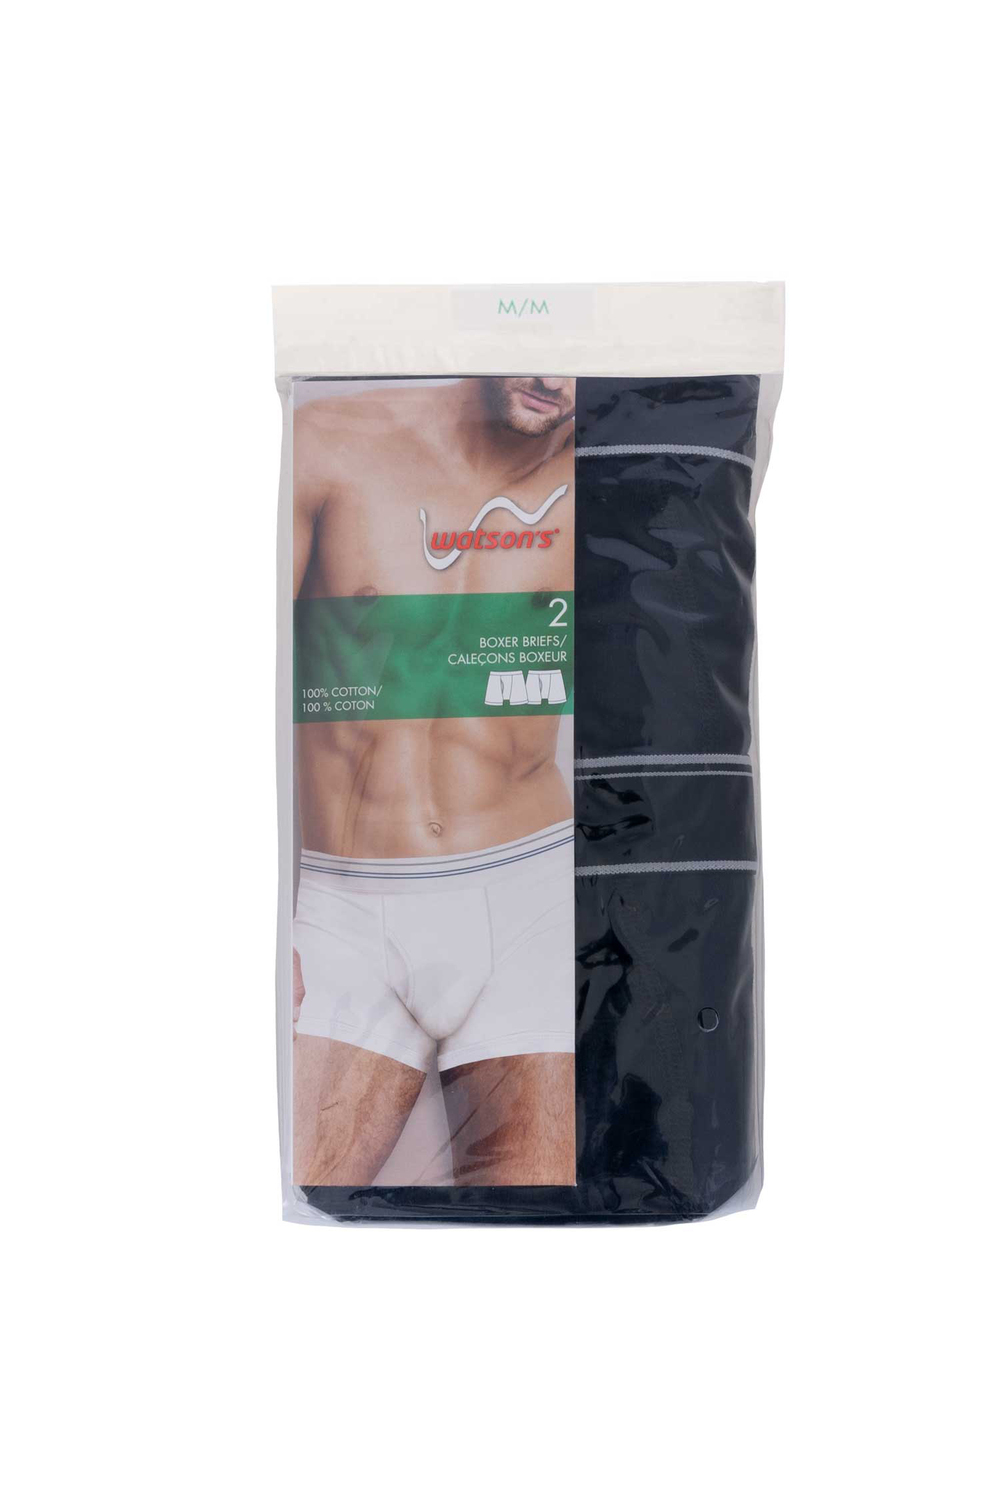 Watson's - Men's 100% cotton underwear, 2 pack boxer briefs, black, medium (M)